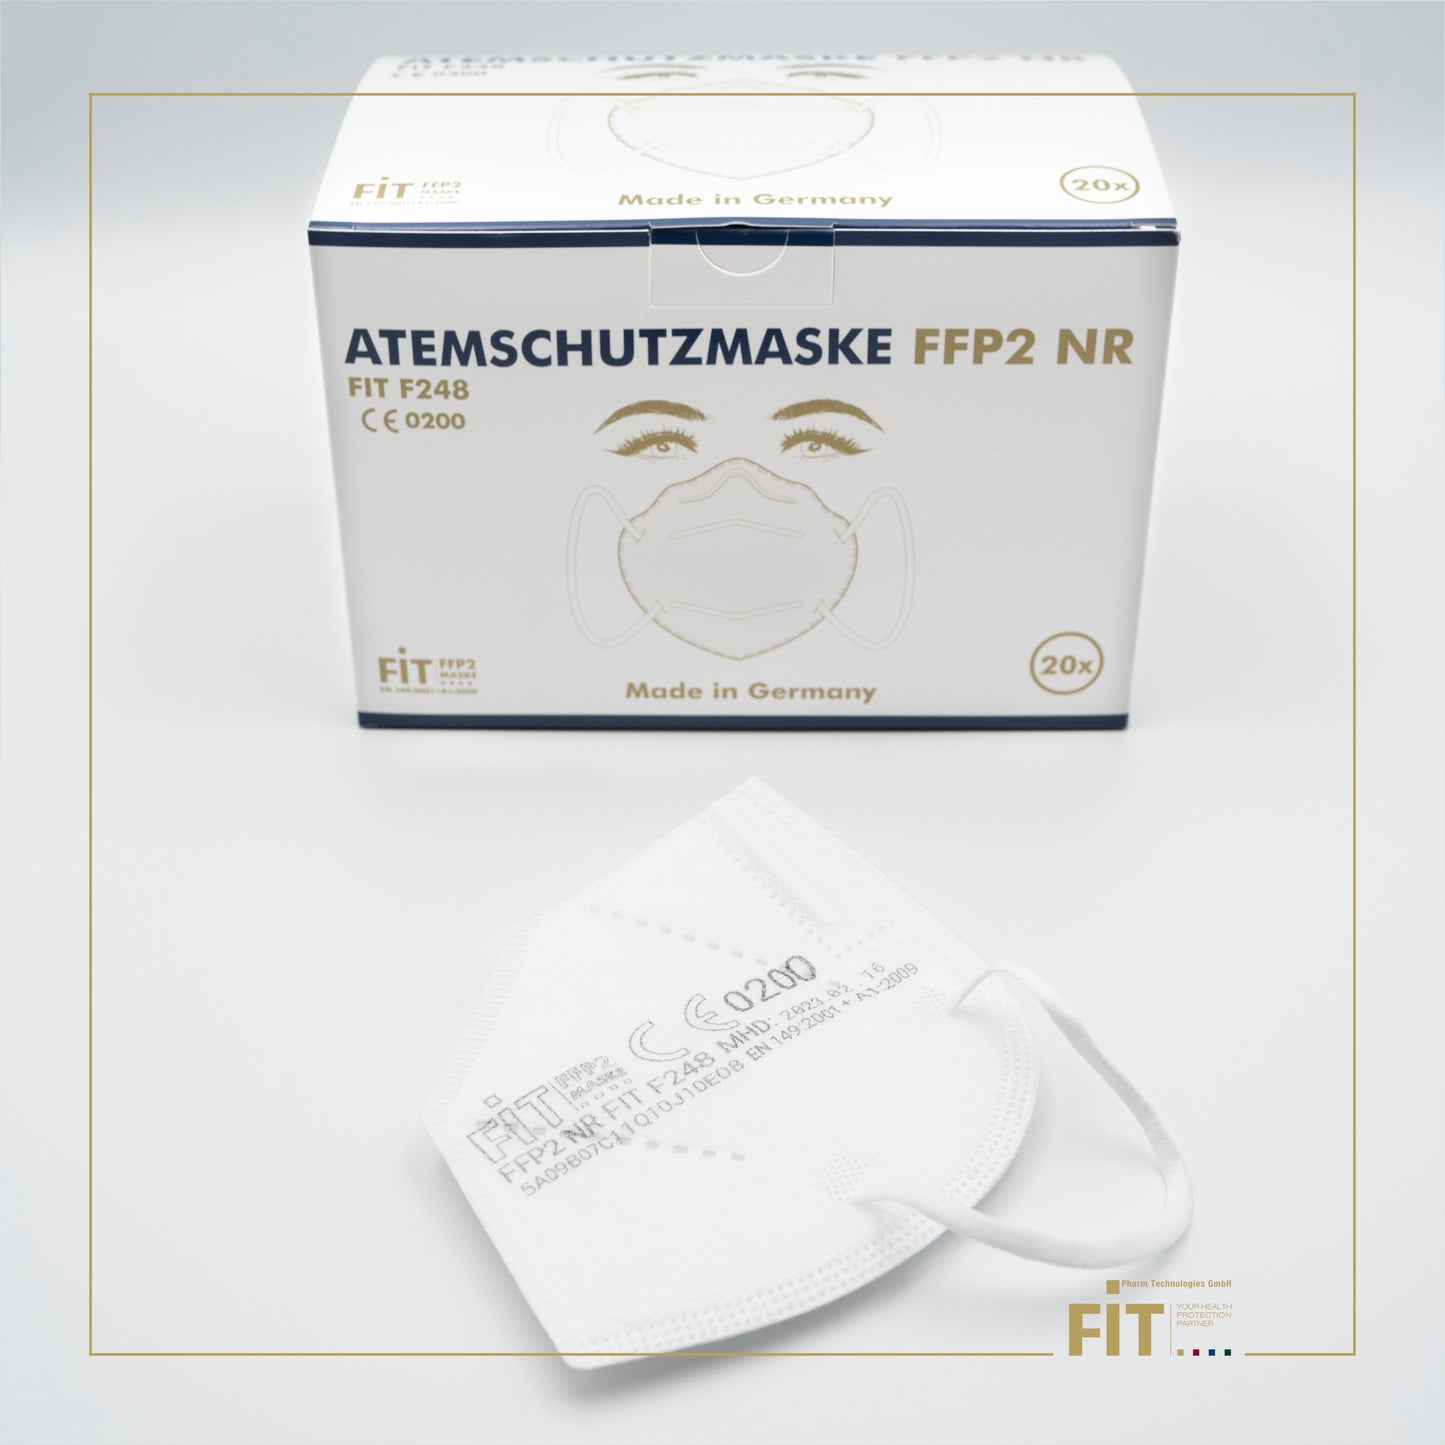 FIT F248 FFP2 NR Atemschutzmaske